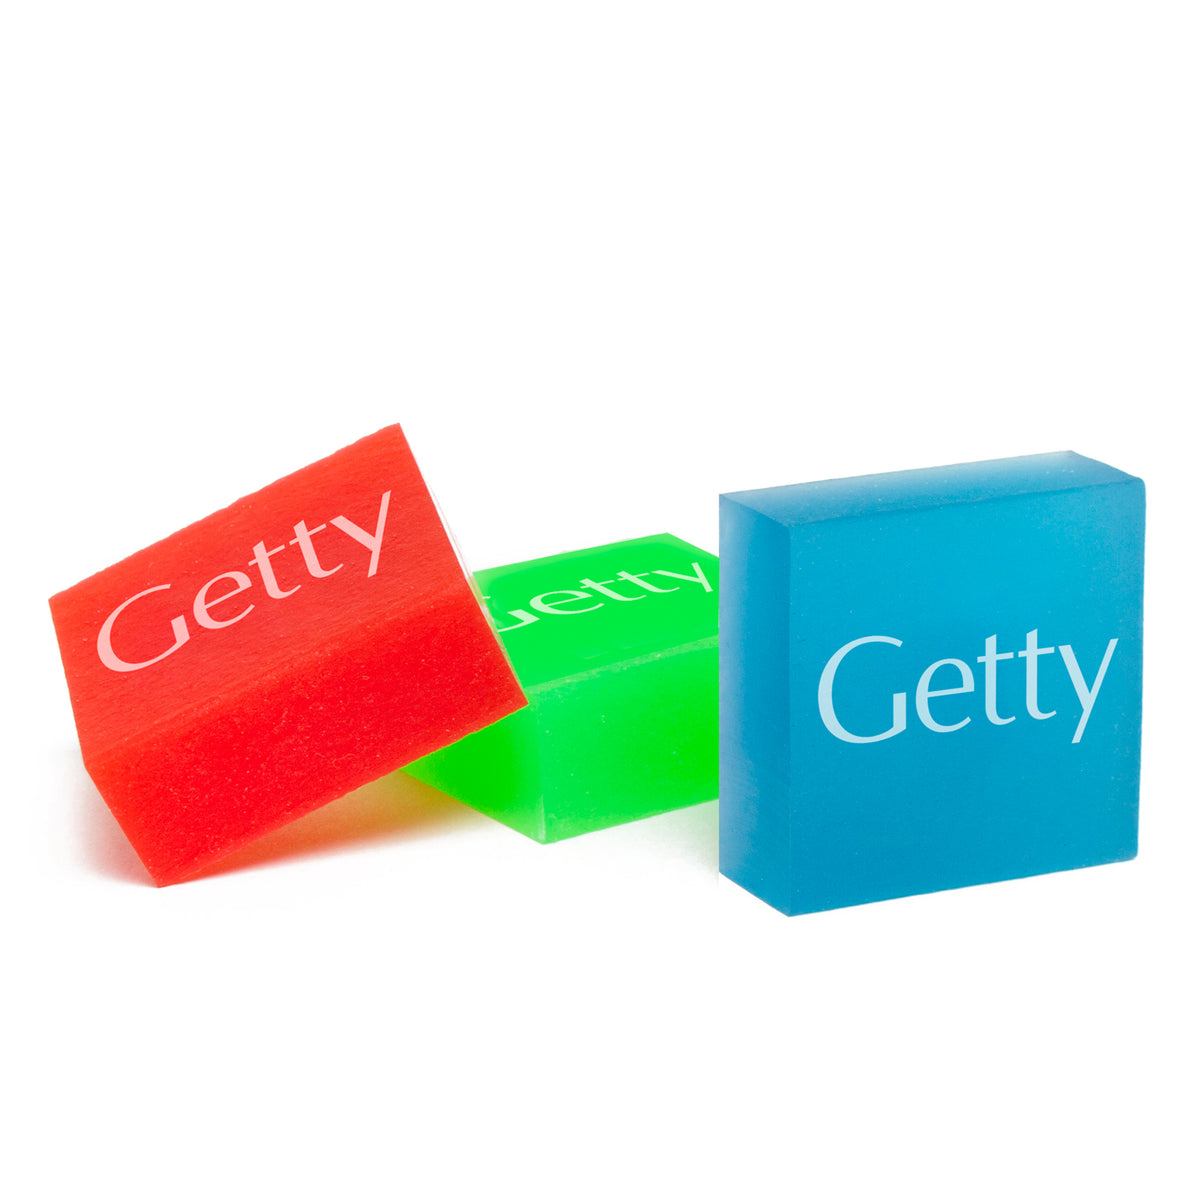 Getty Logo Eraser